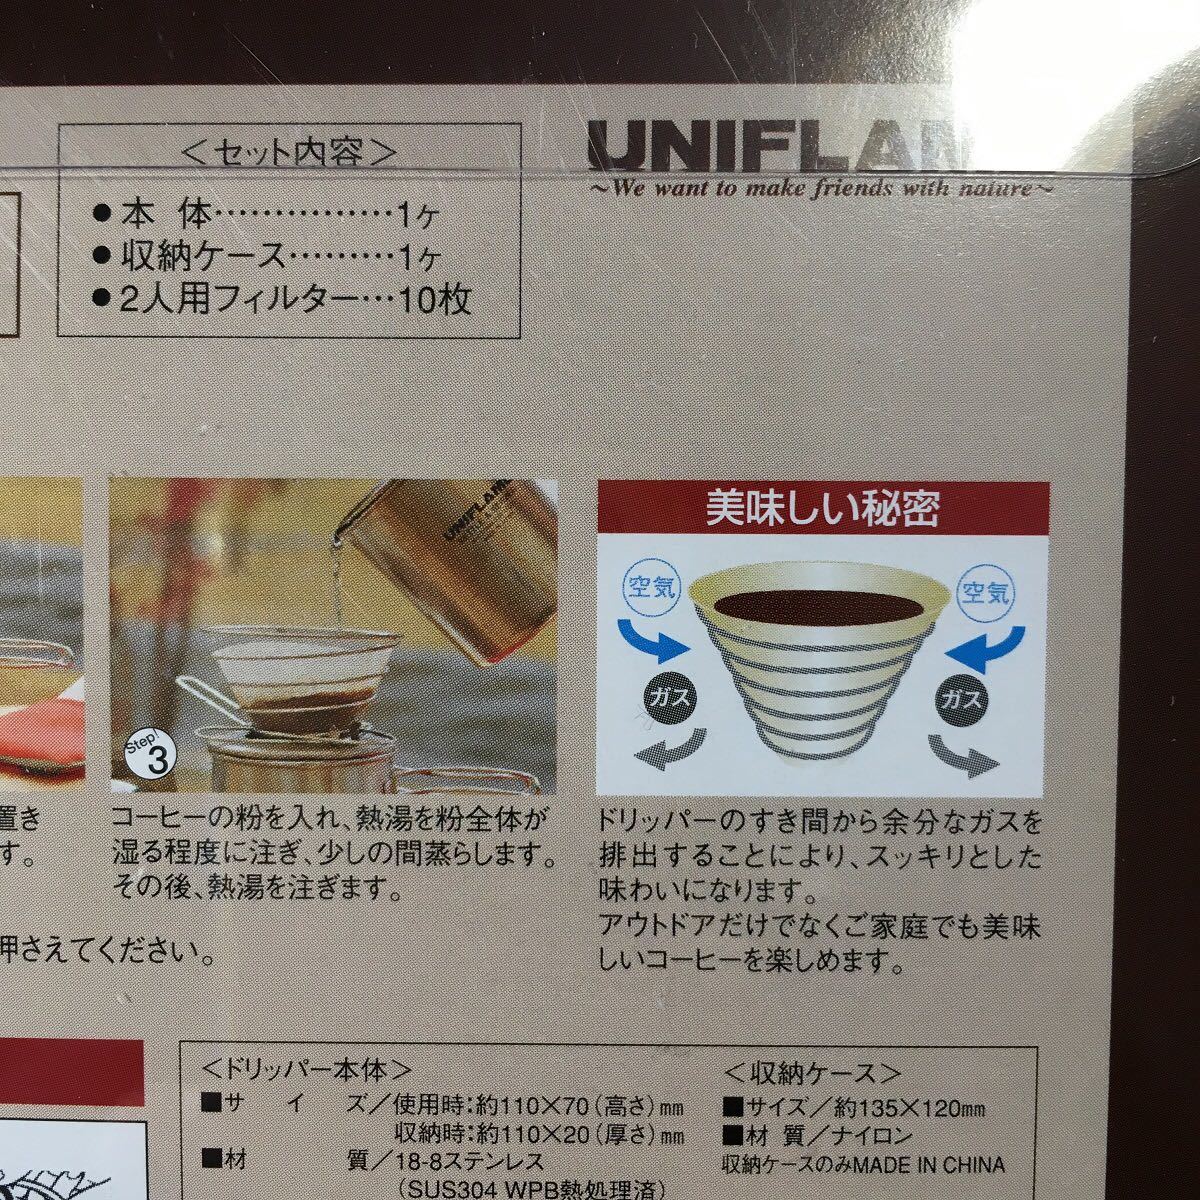 【新品】コーヒーバネット キュート 2人用セット ユニフレーム 日本製 携帯型コーヒードリッパー cute UNIFLAME